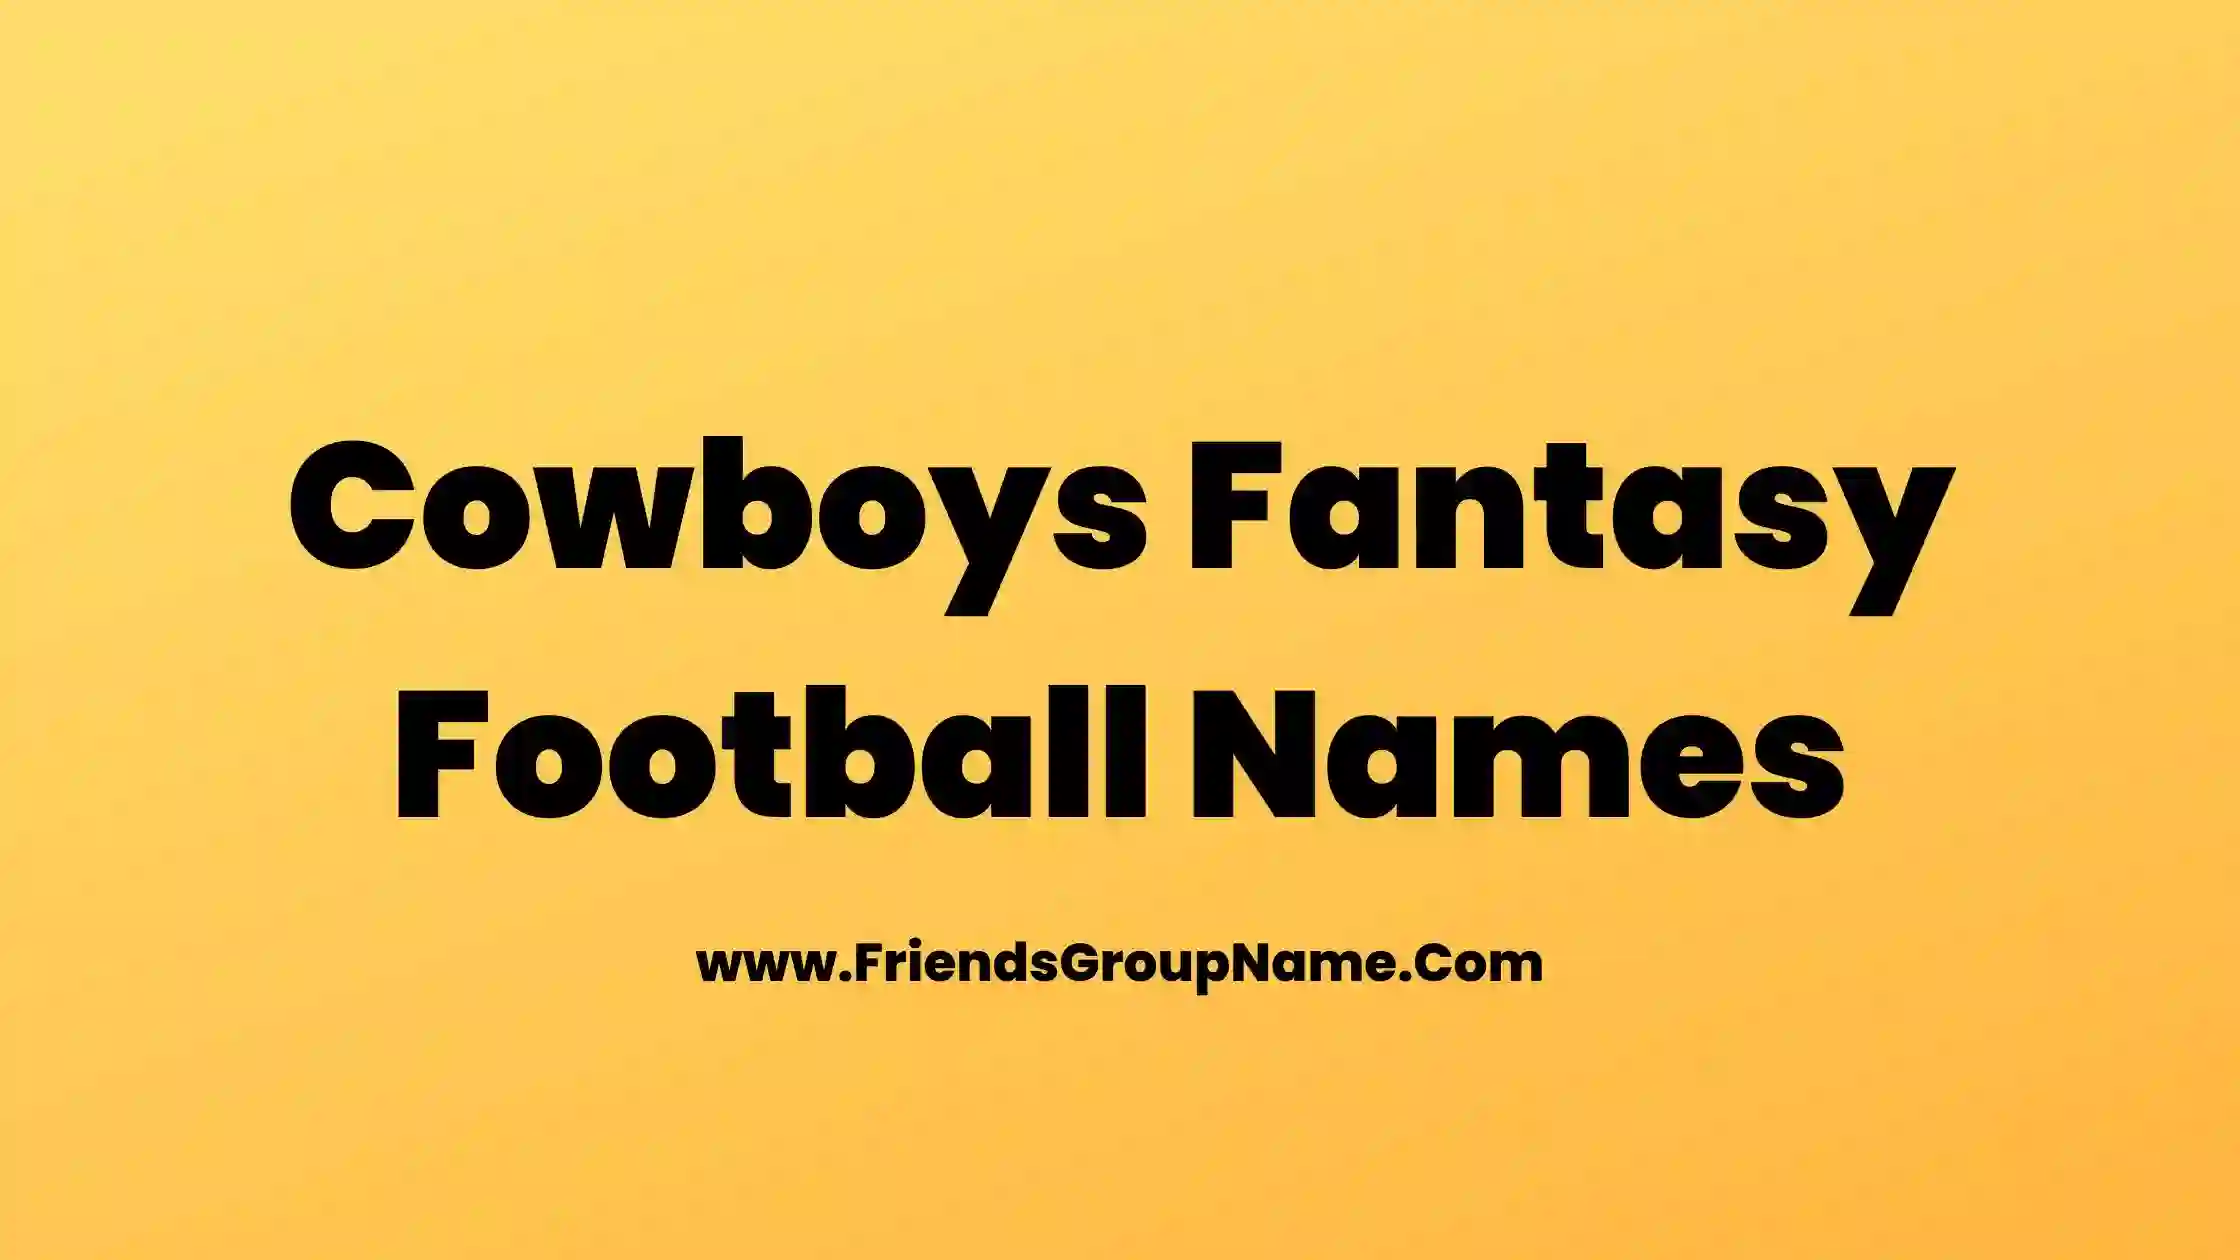 Cowboys Fantasy Football Names